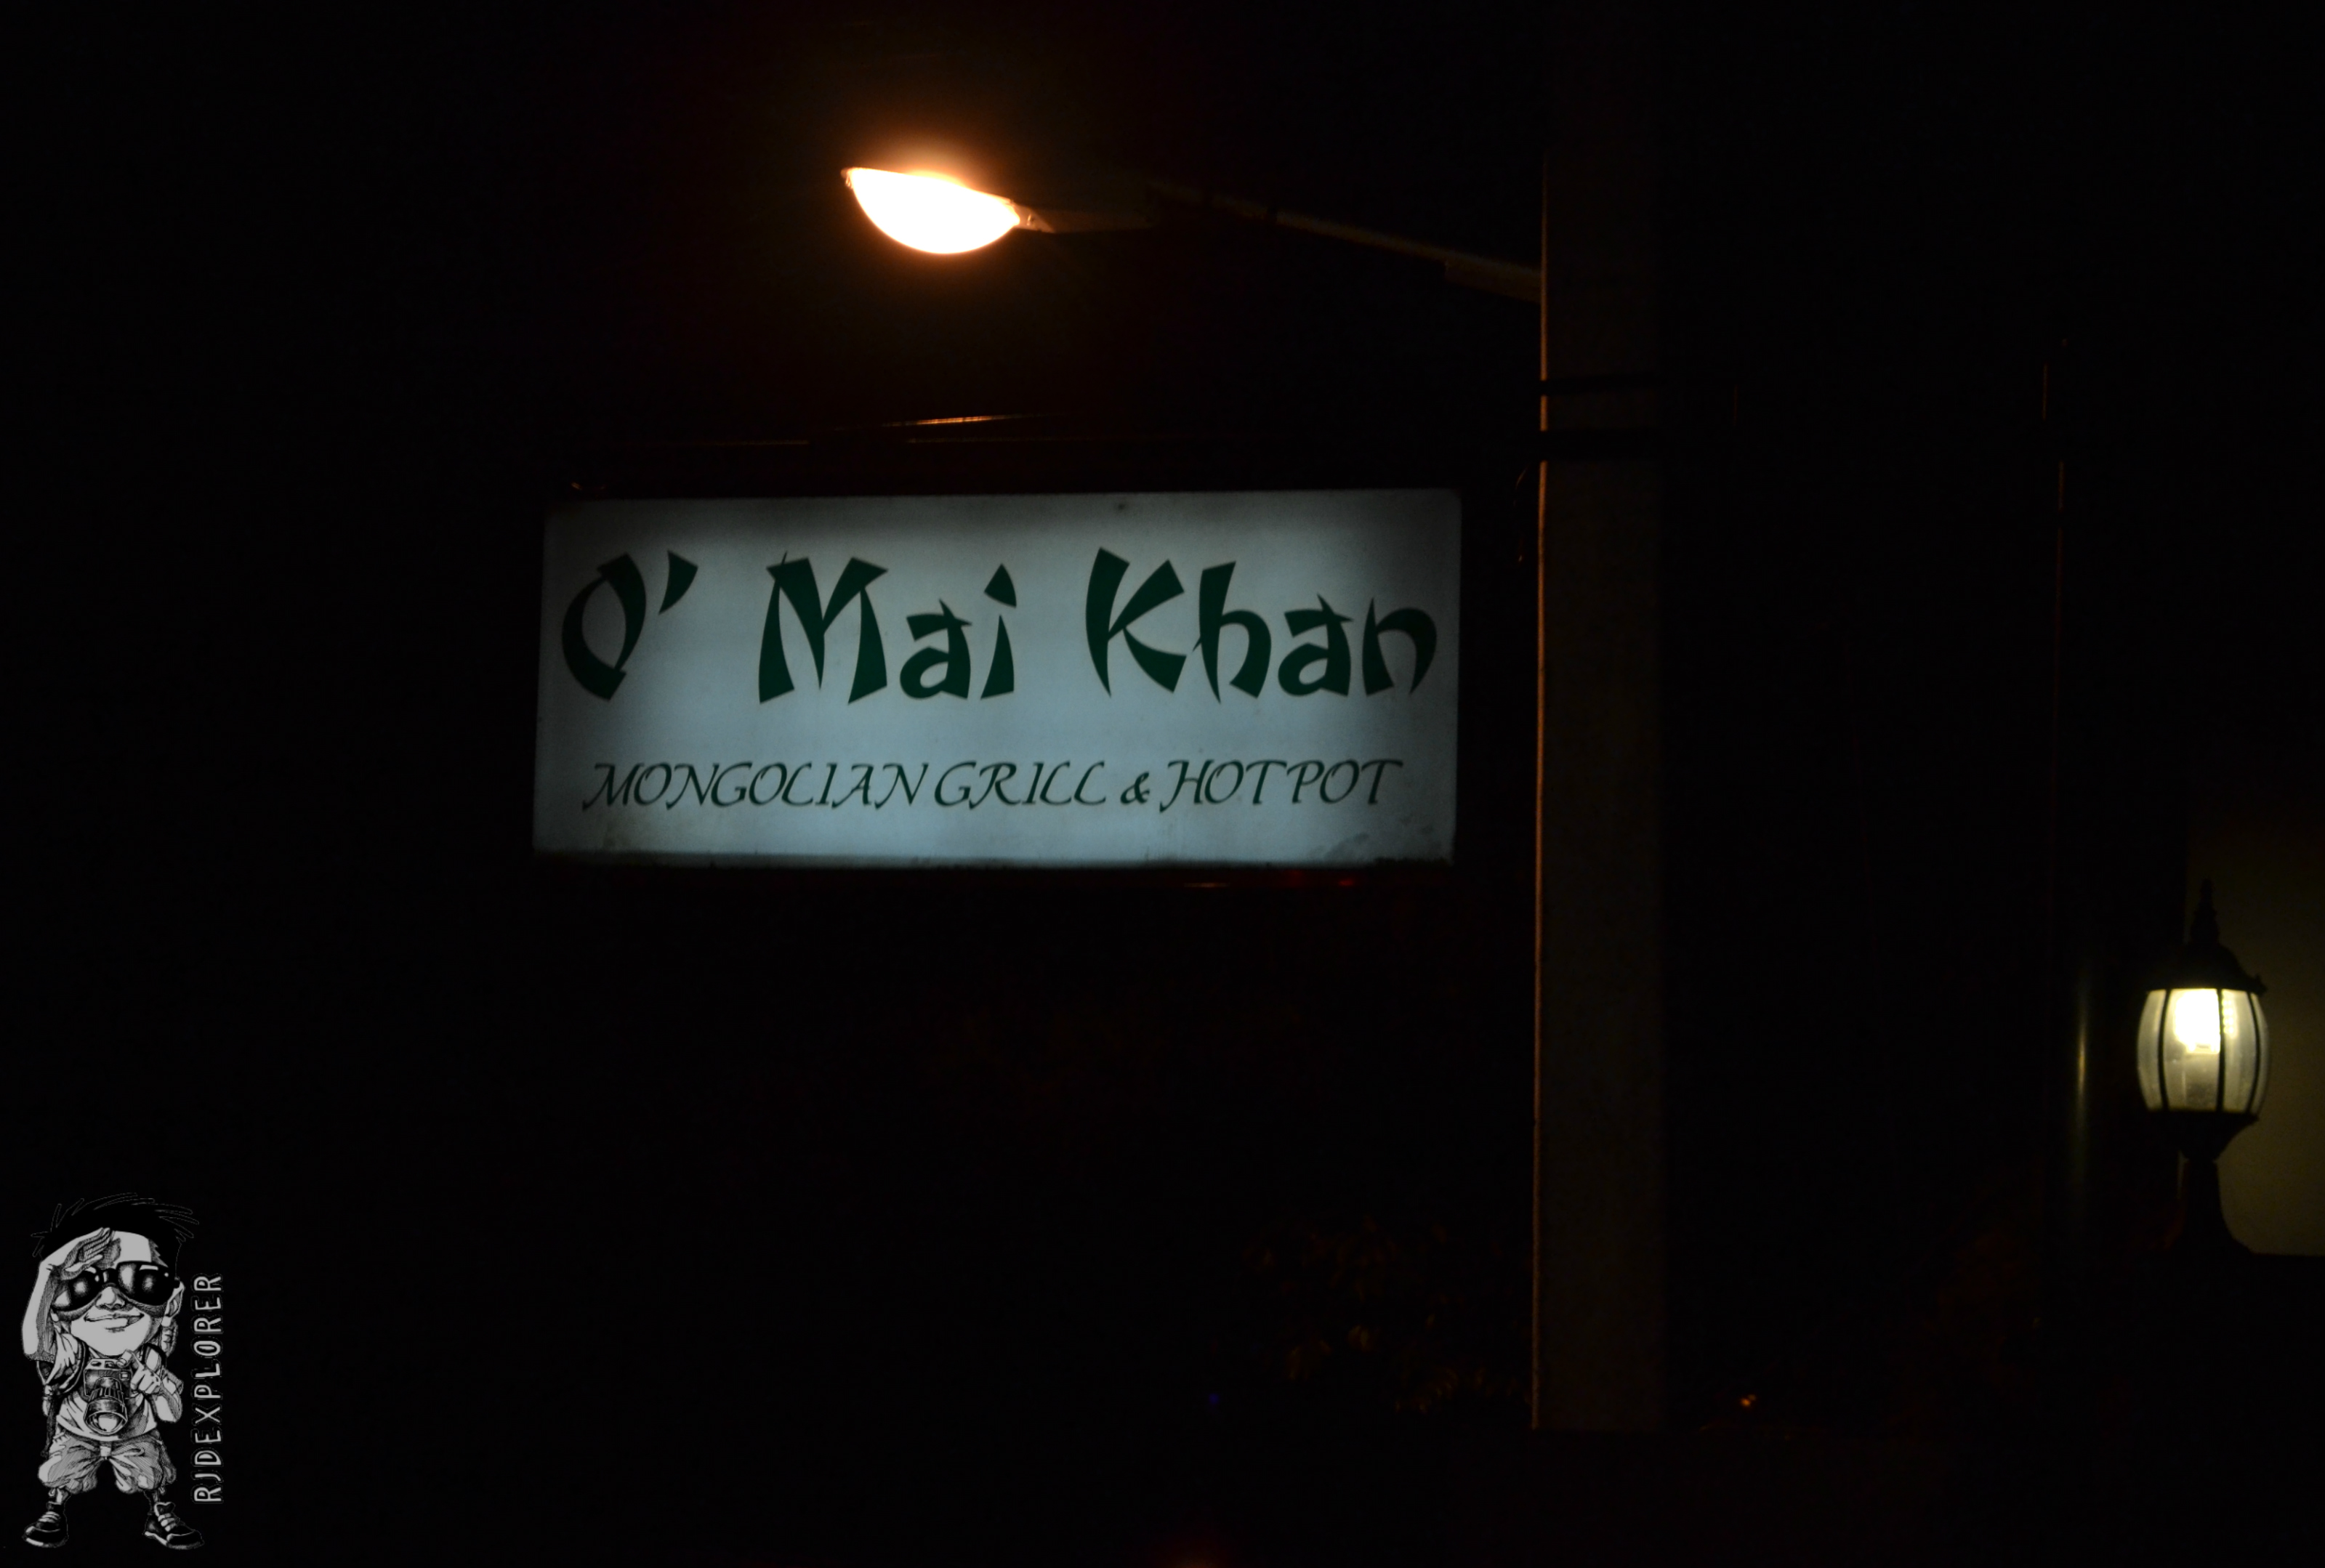 O' Mai Khan